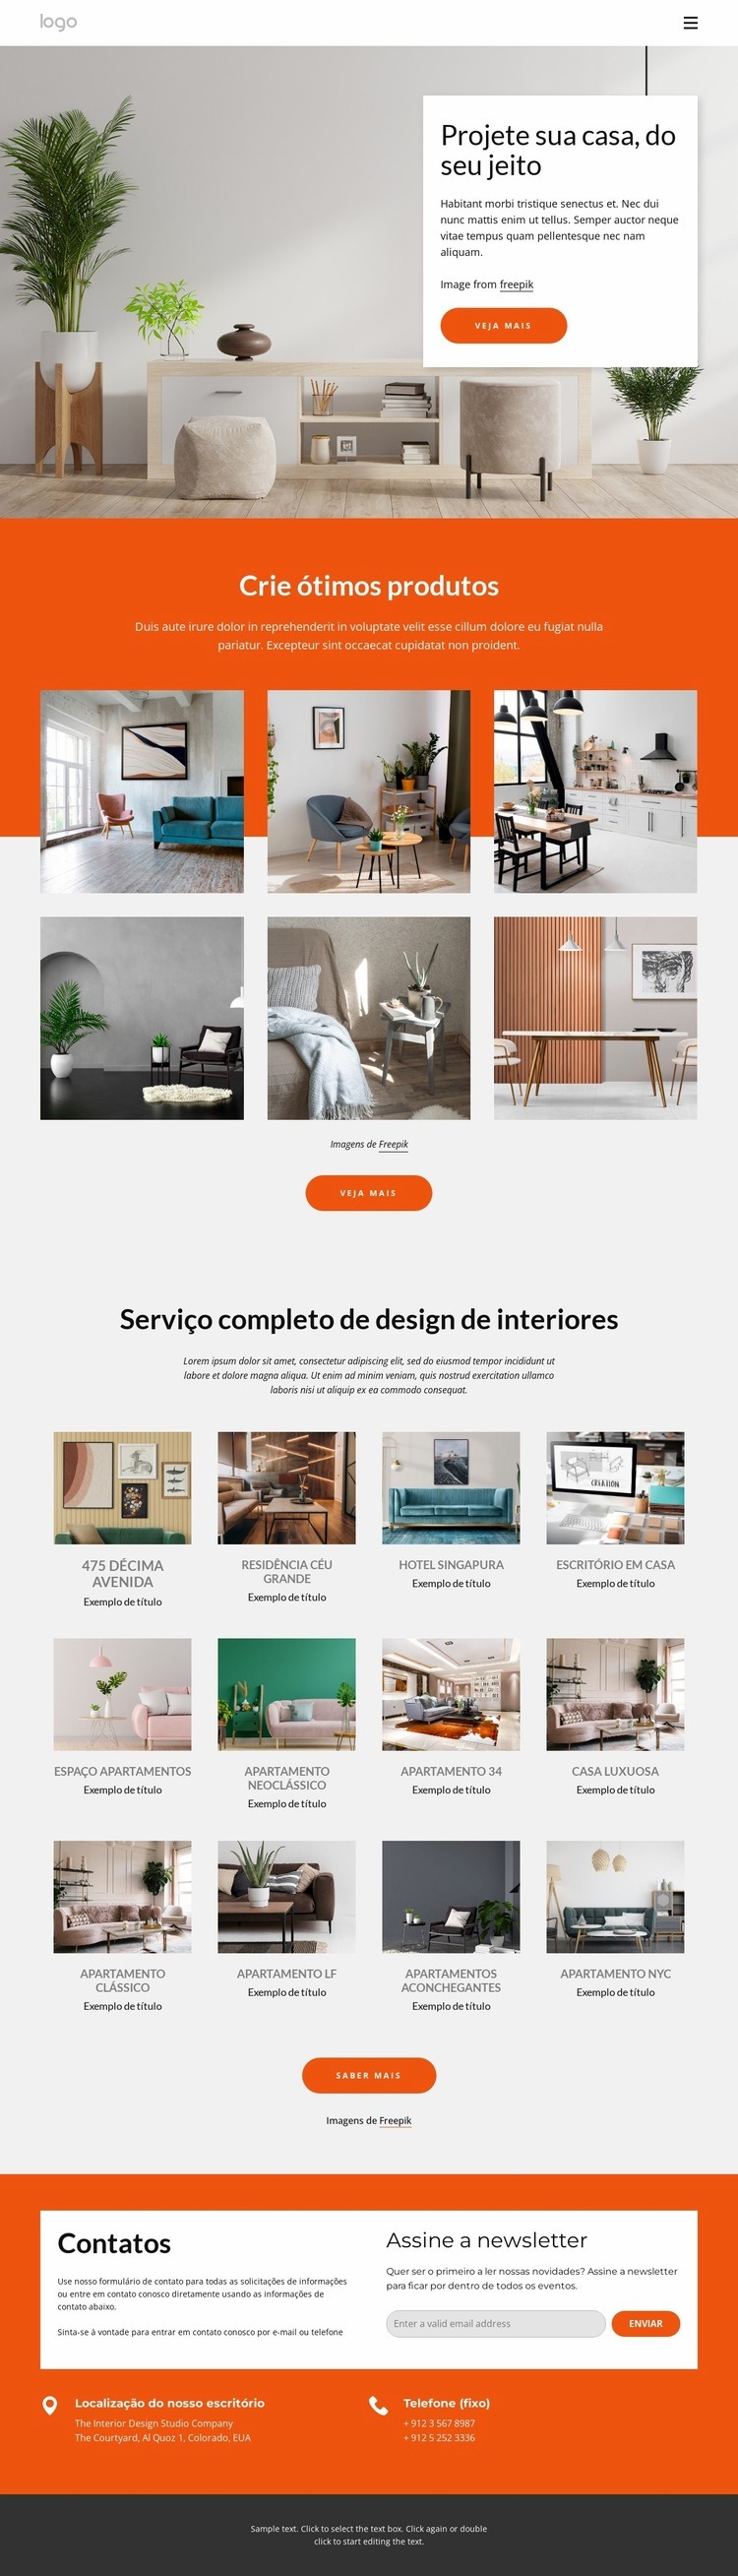 portfólio de design de interiores Maquete do site